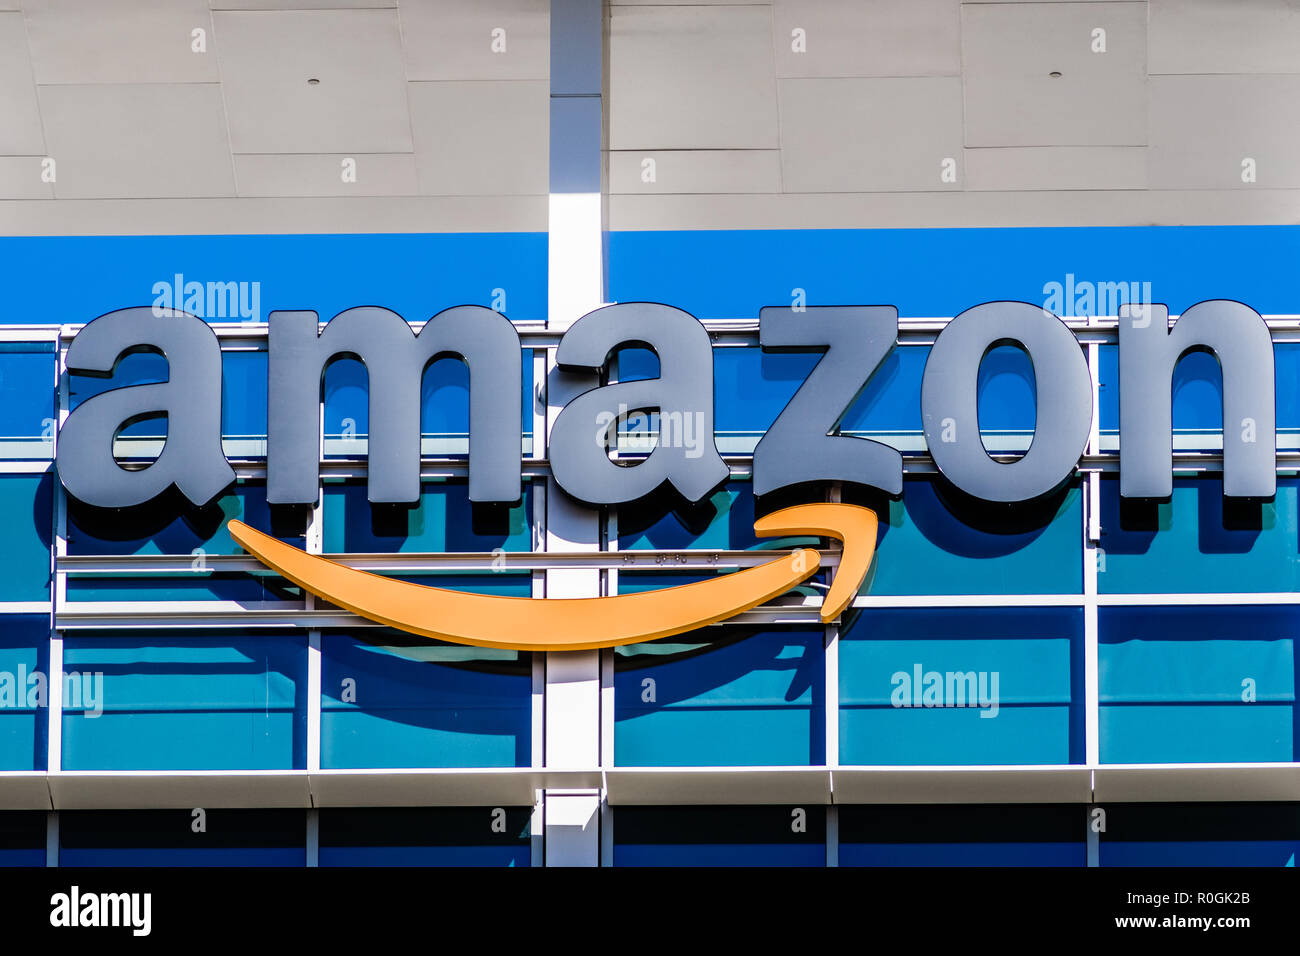 2 novembre 2018 Sunnyvale / CA / USA - Amazon logo sur la façade de l'un de leurs immeubles de bureaux situés dans la Silicon Valley, San Francisco bay area Banque D'Images